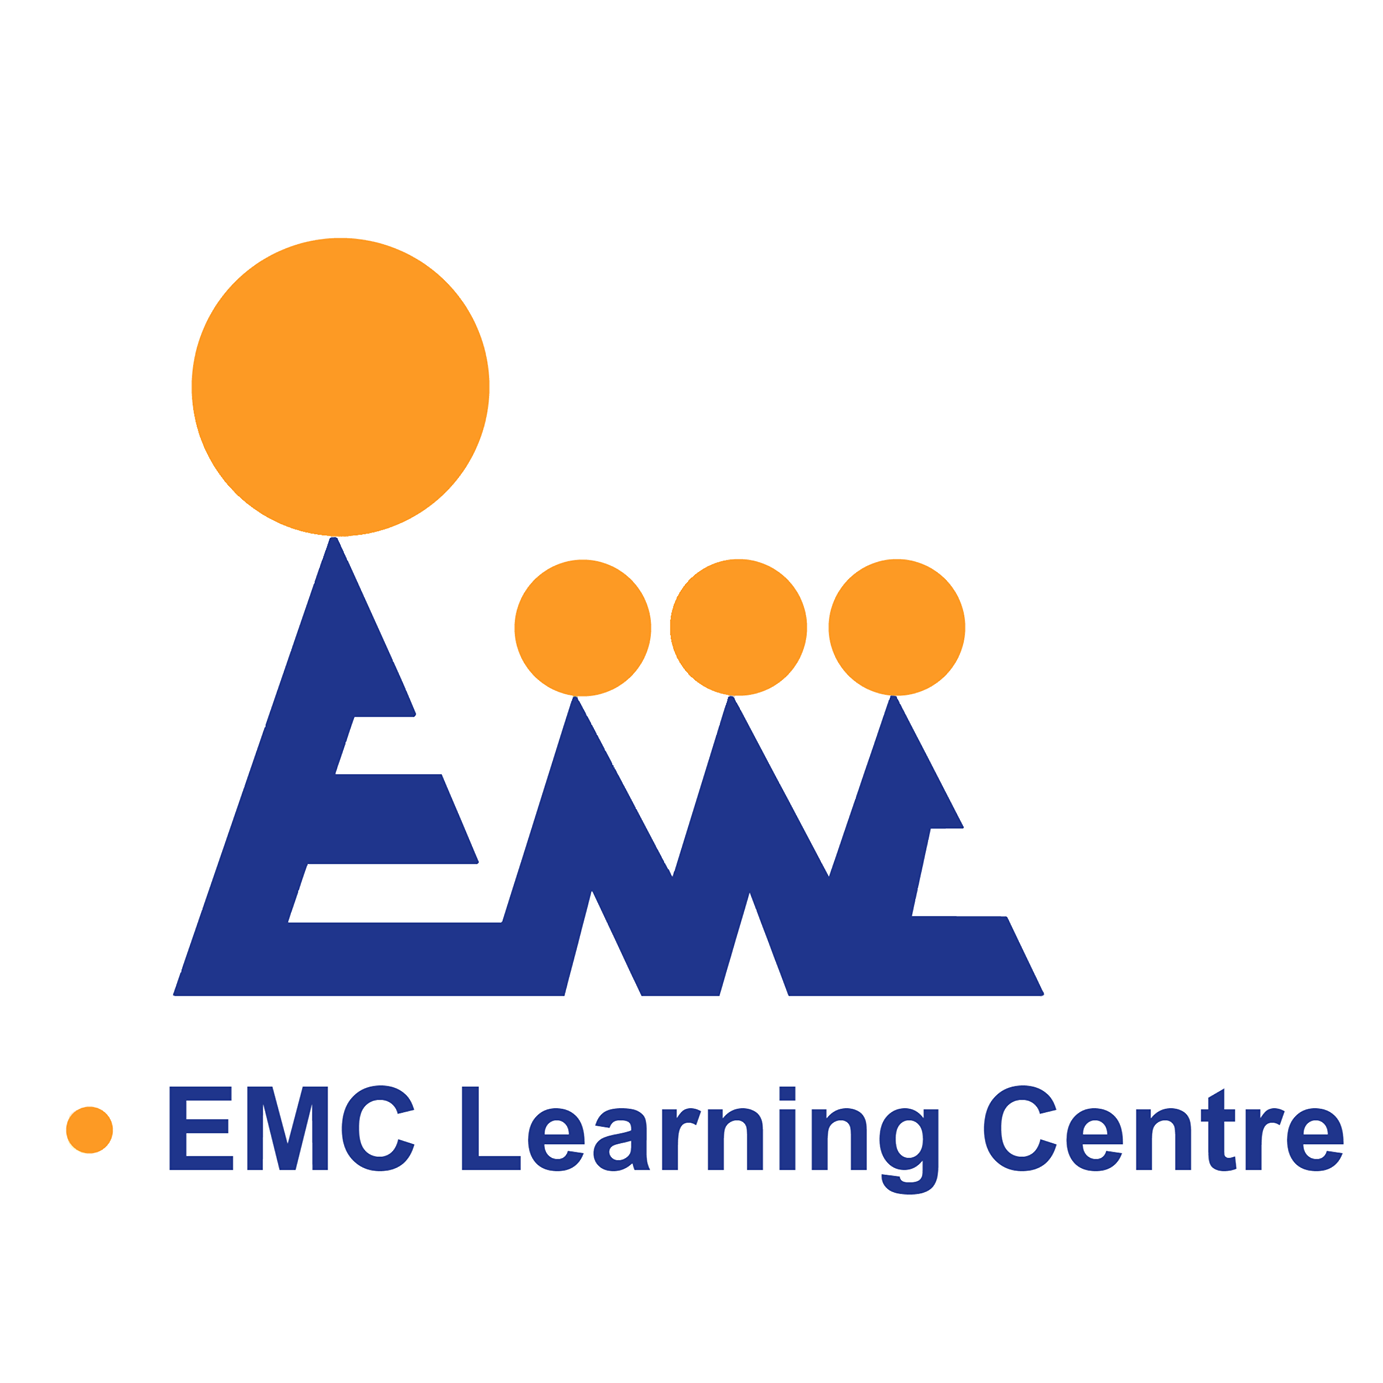 EMC Learning Centre